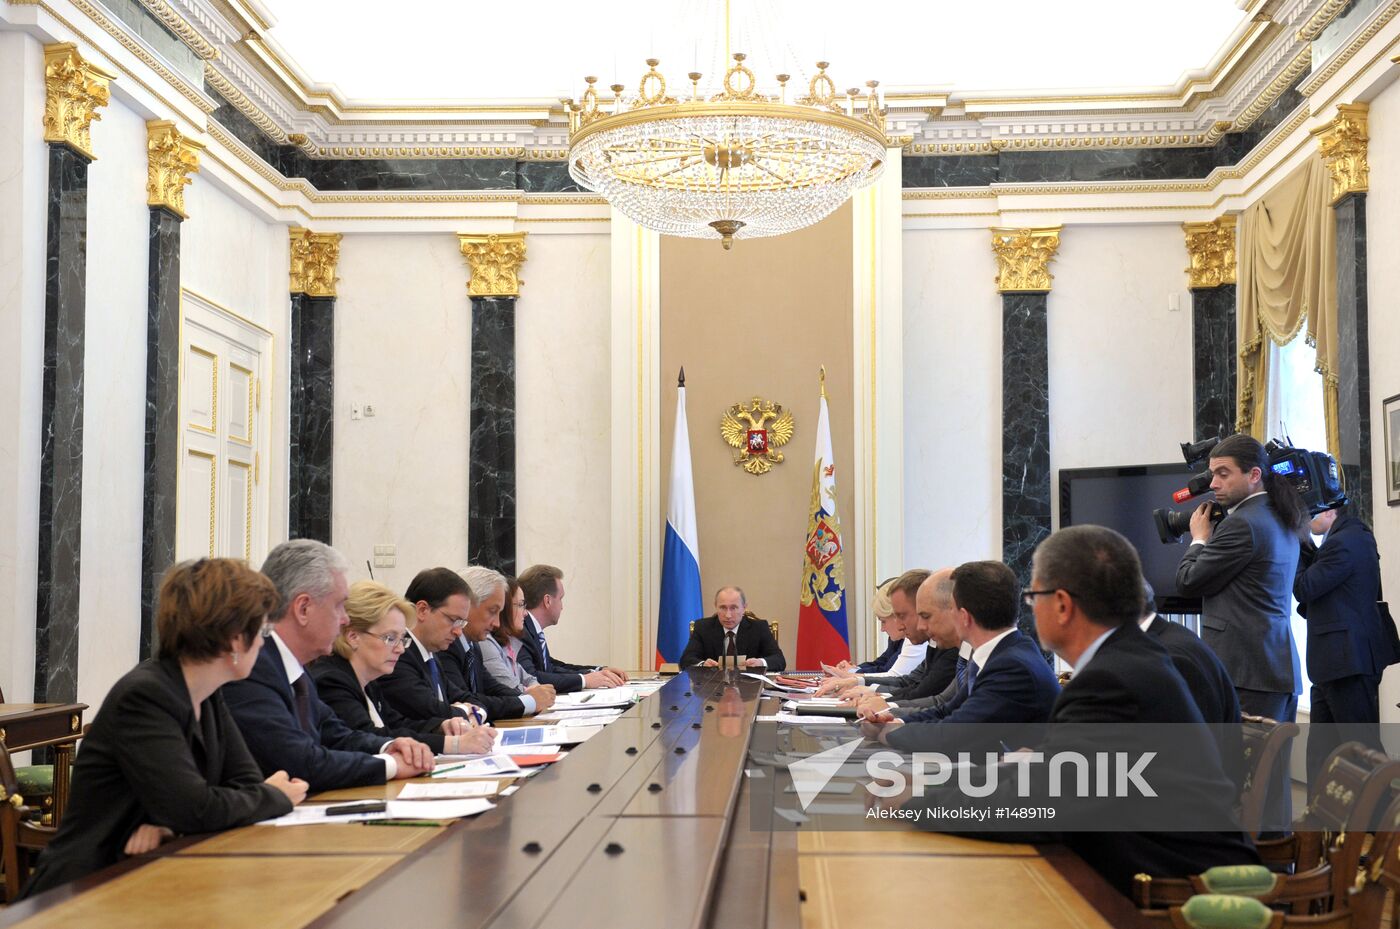 V.Putin holds meeting on economic issues in Kremlin